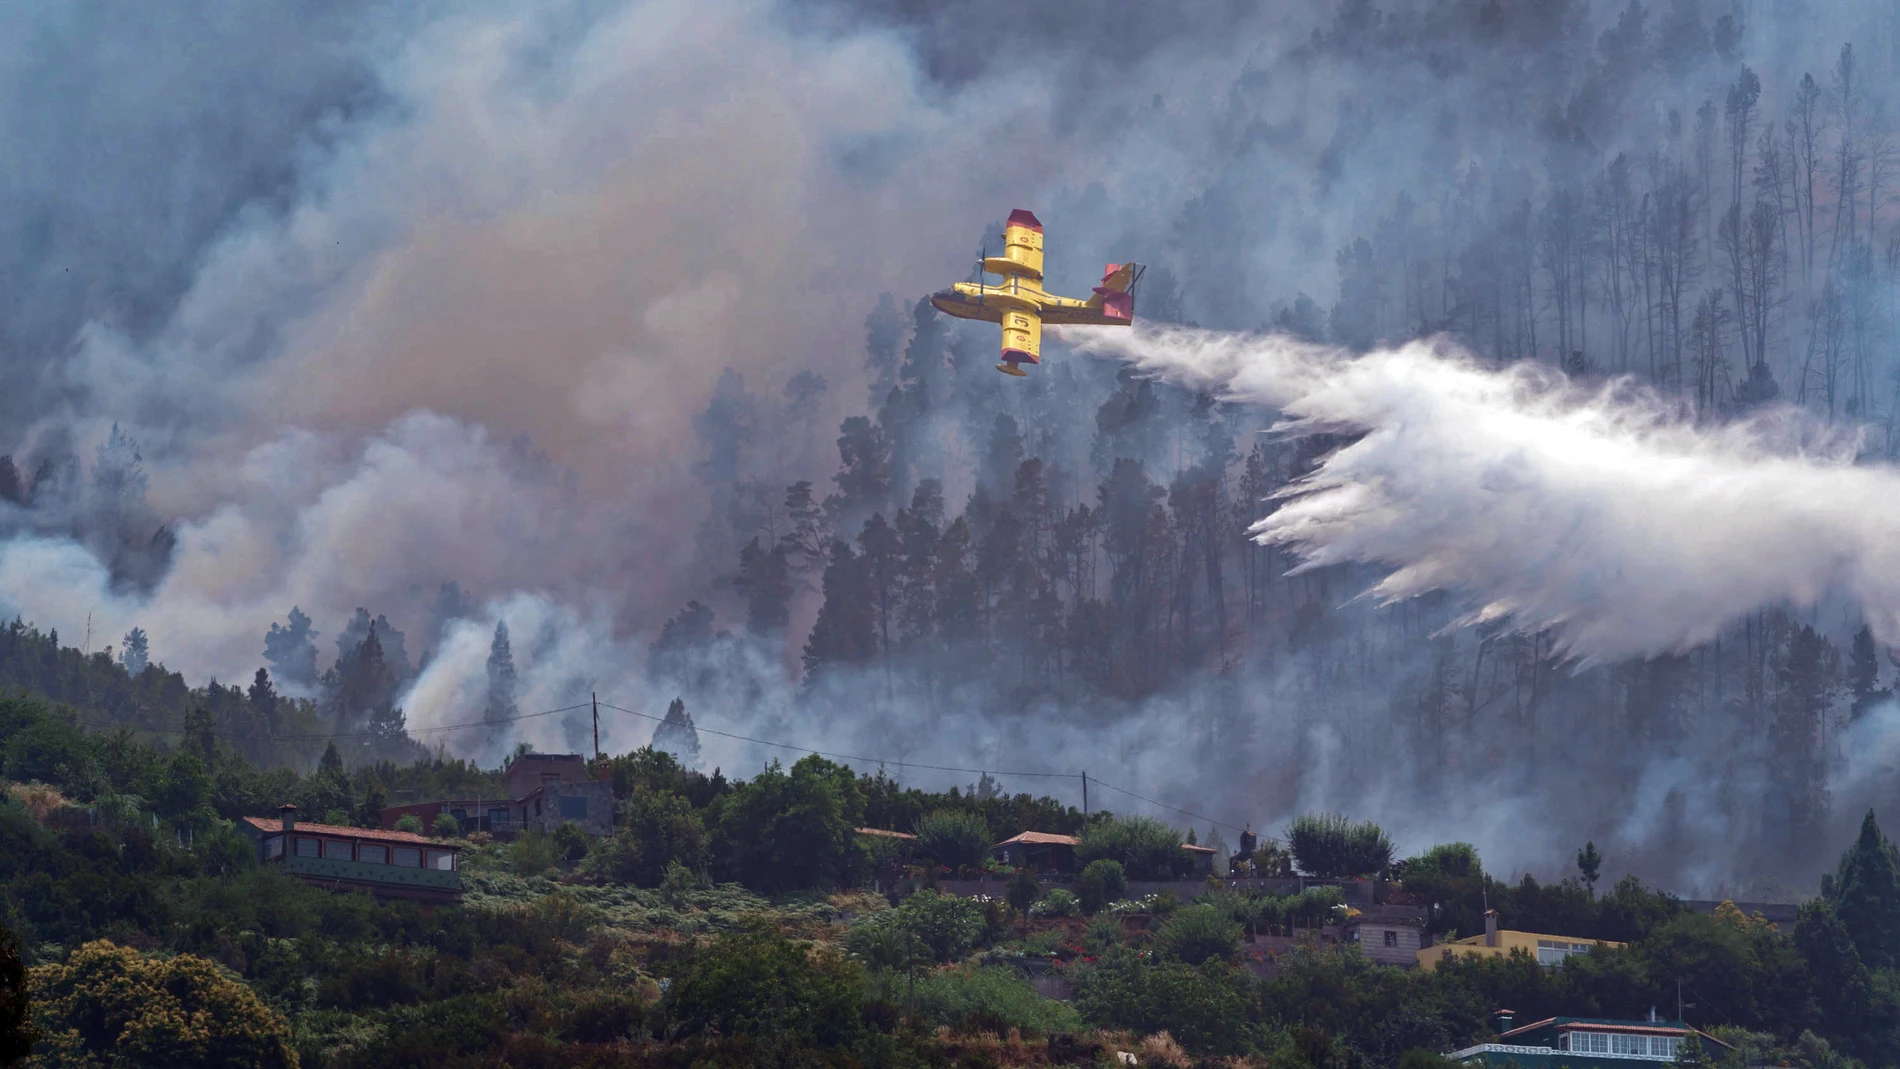 En la imagen, uno de los hidroaviones que participan en el operativo descarga agua sobre el incendio en Tenerife.